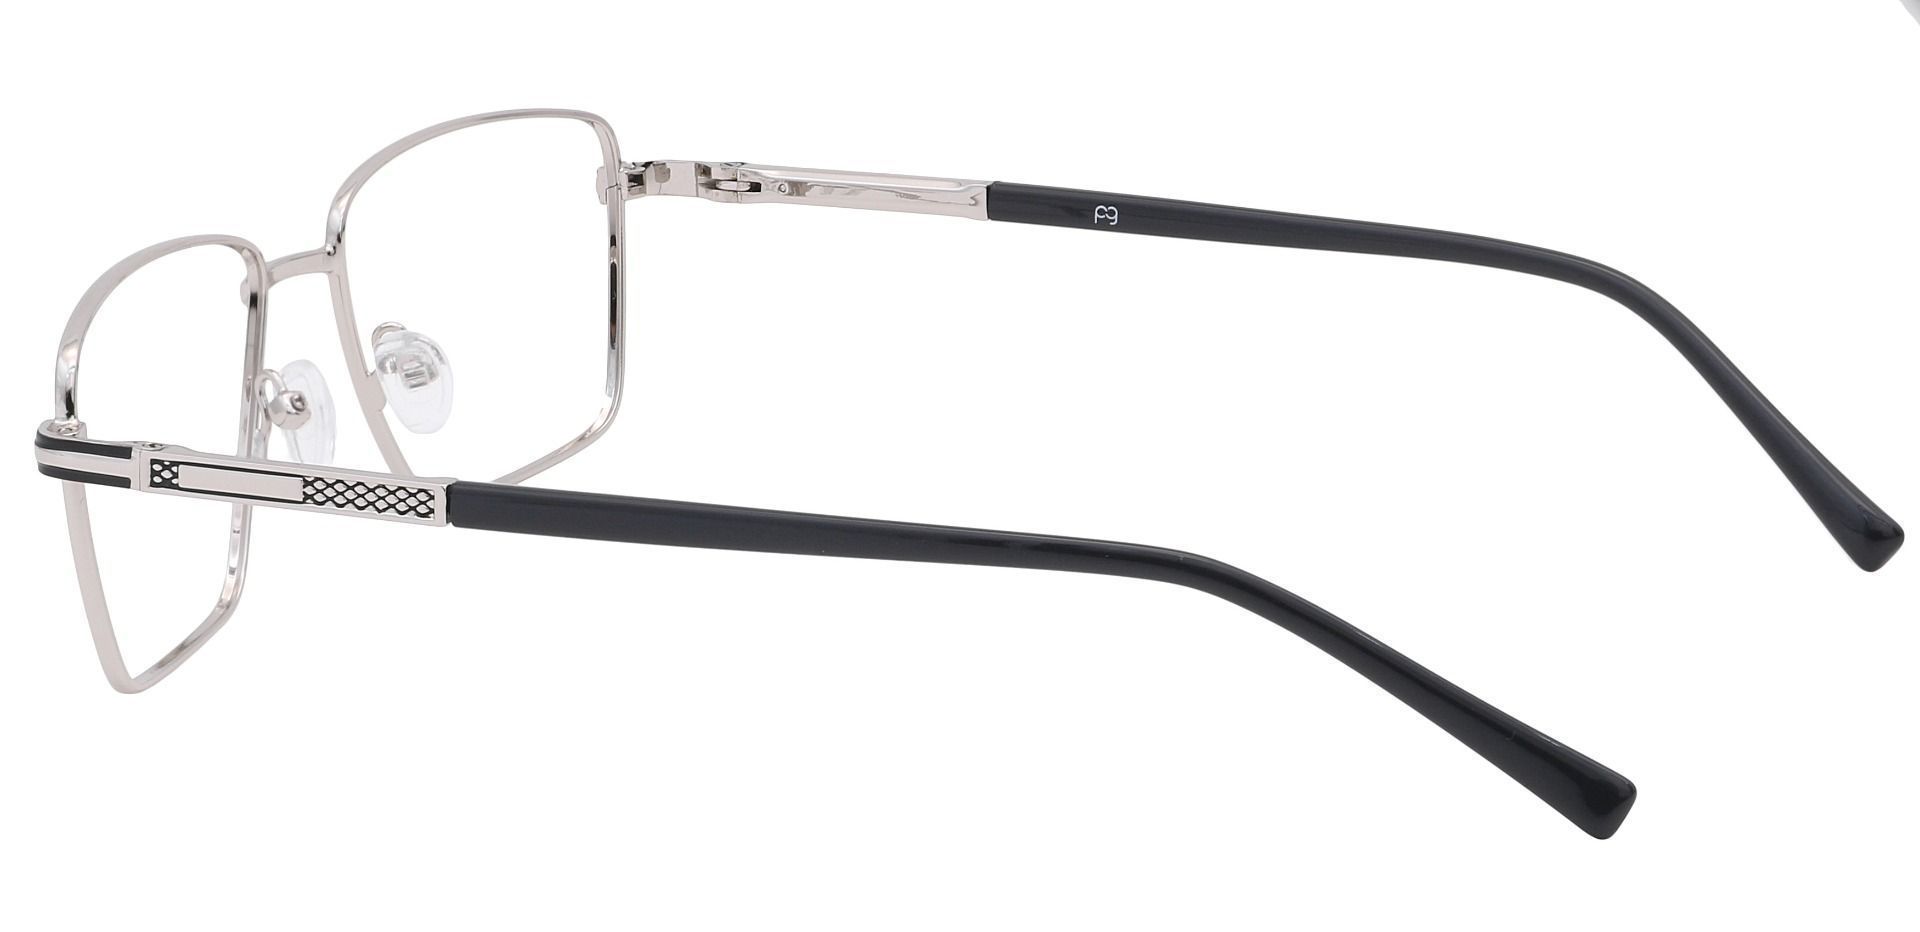 Daniel Rectangle Progressive Glasses - Silver